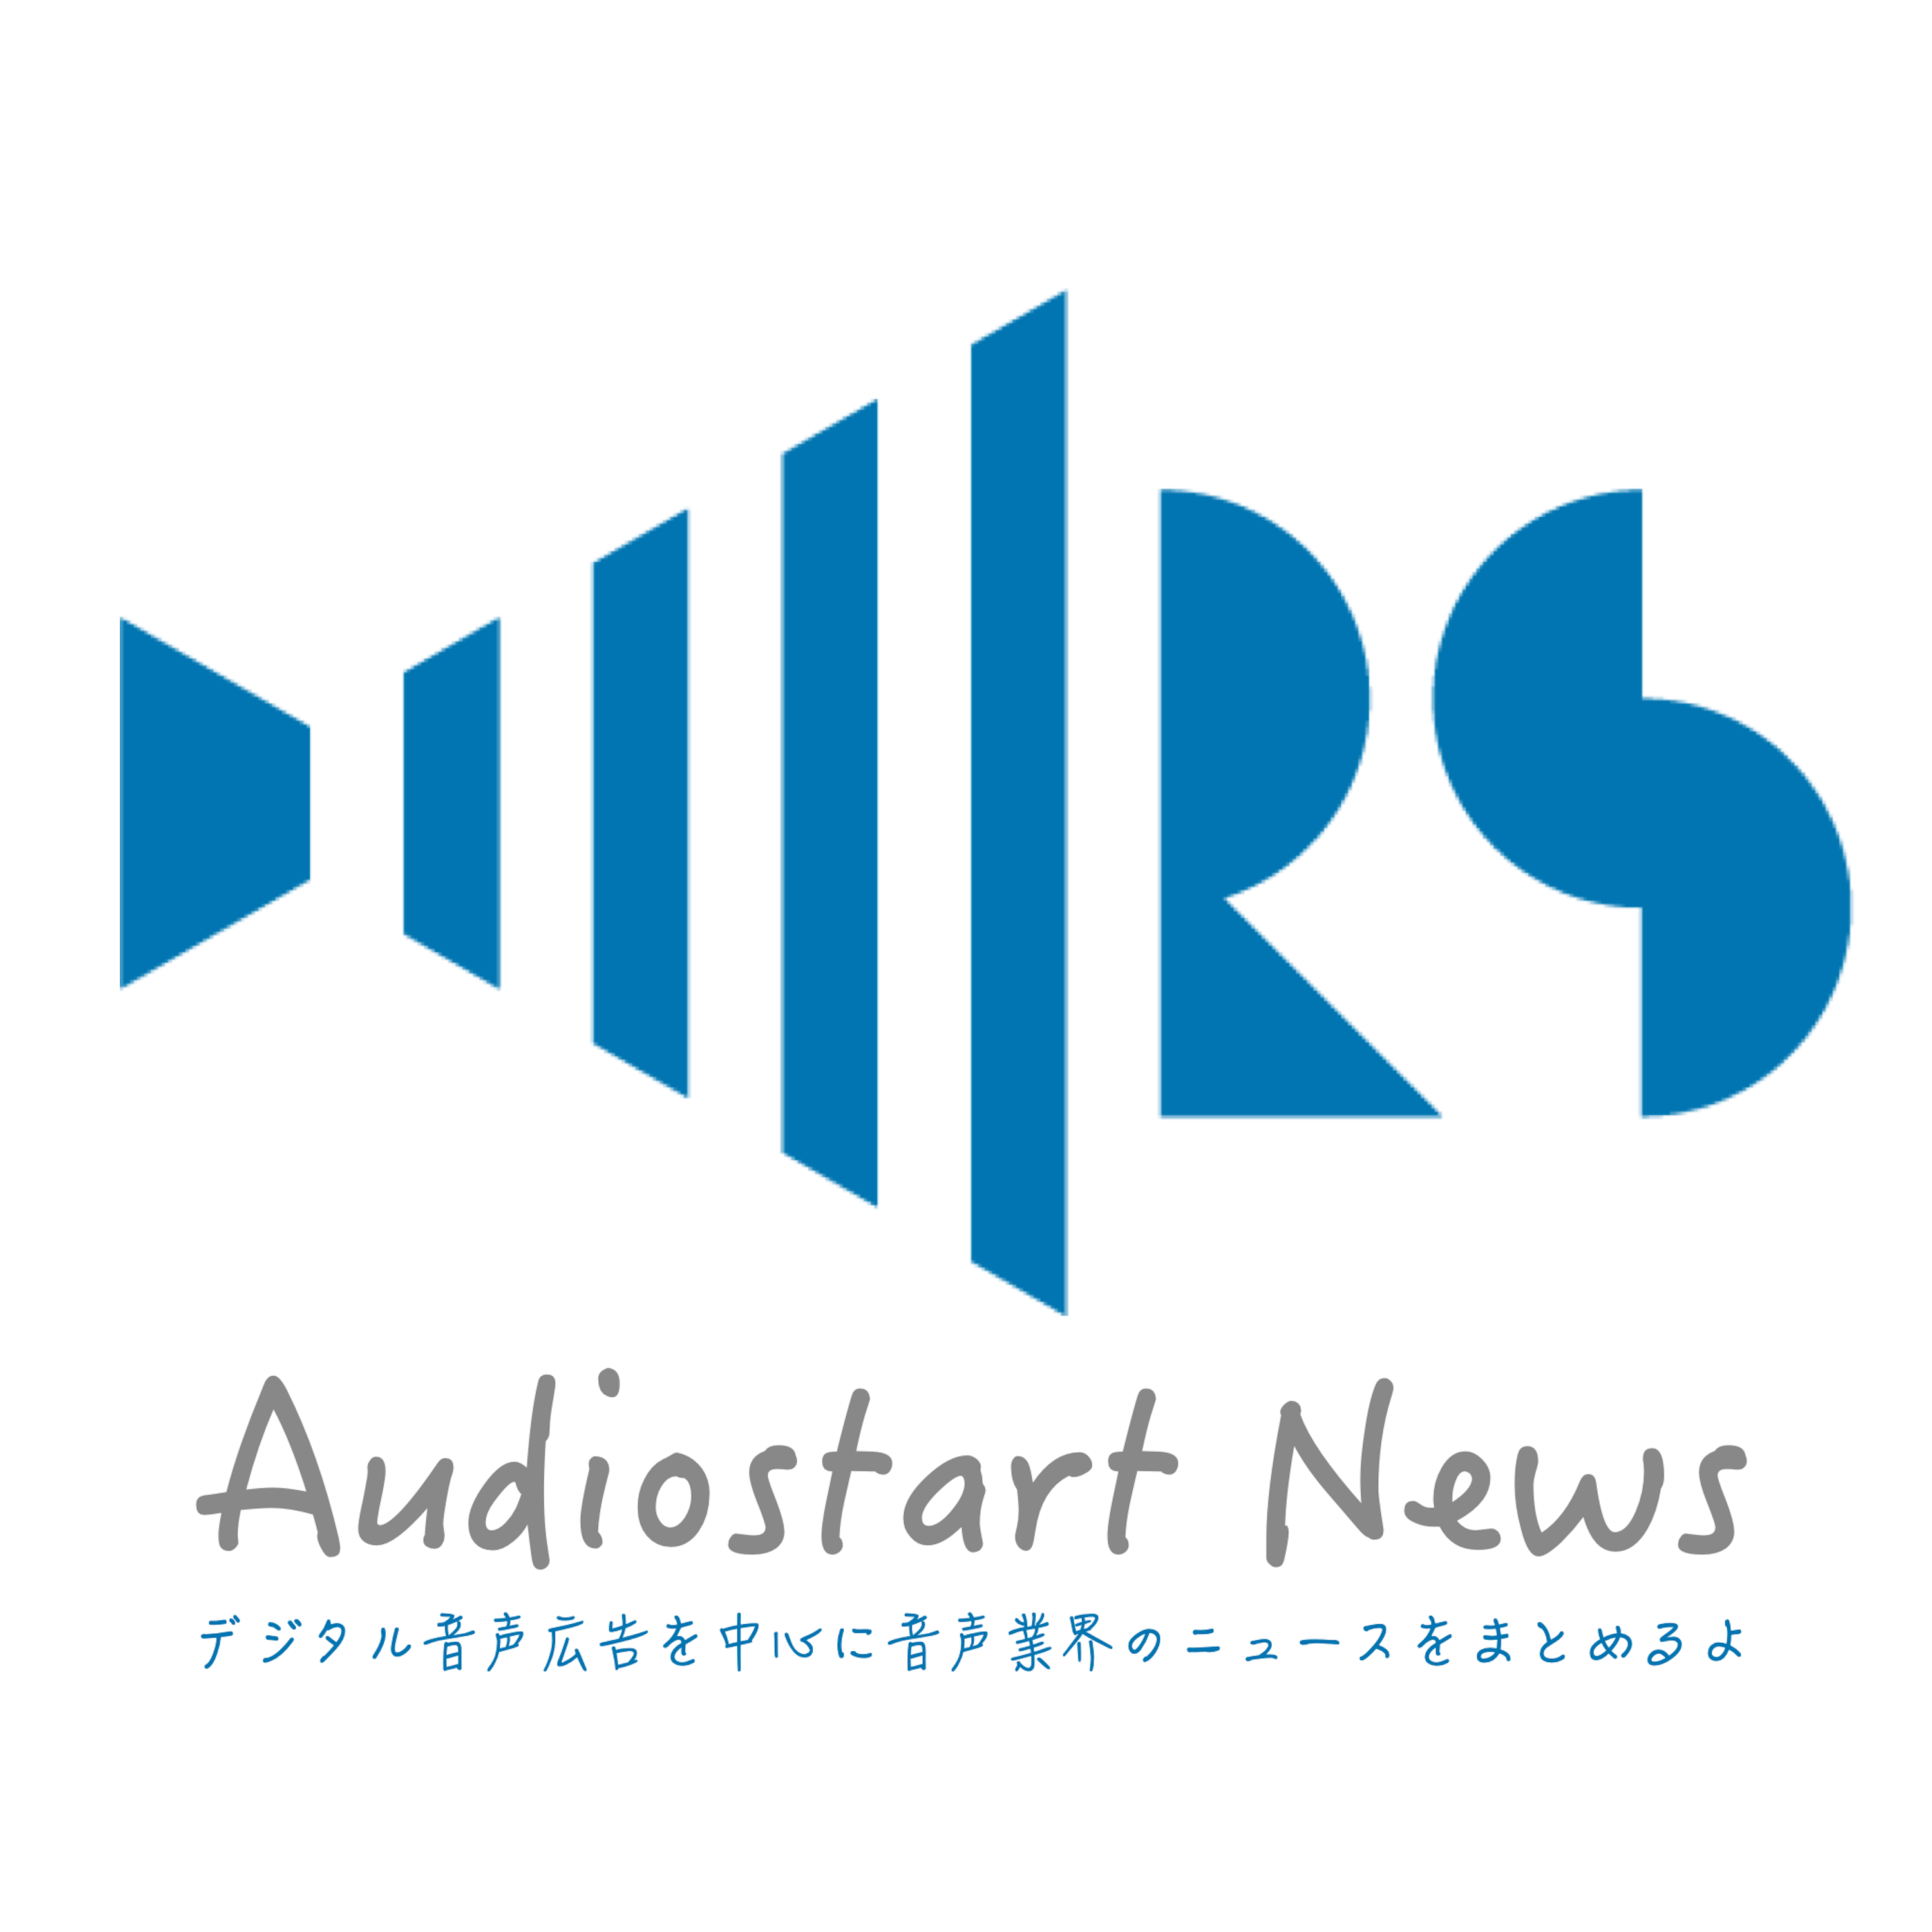 Audiostart News